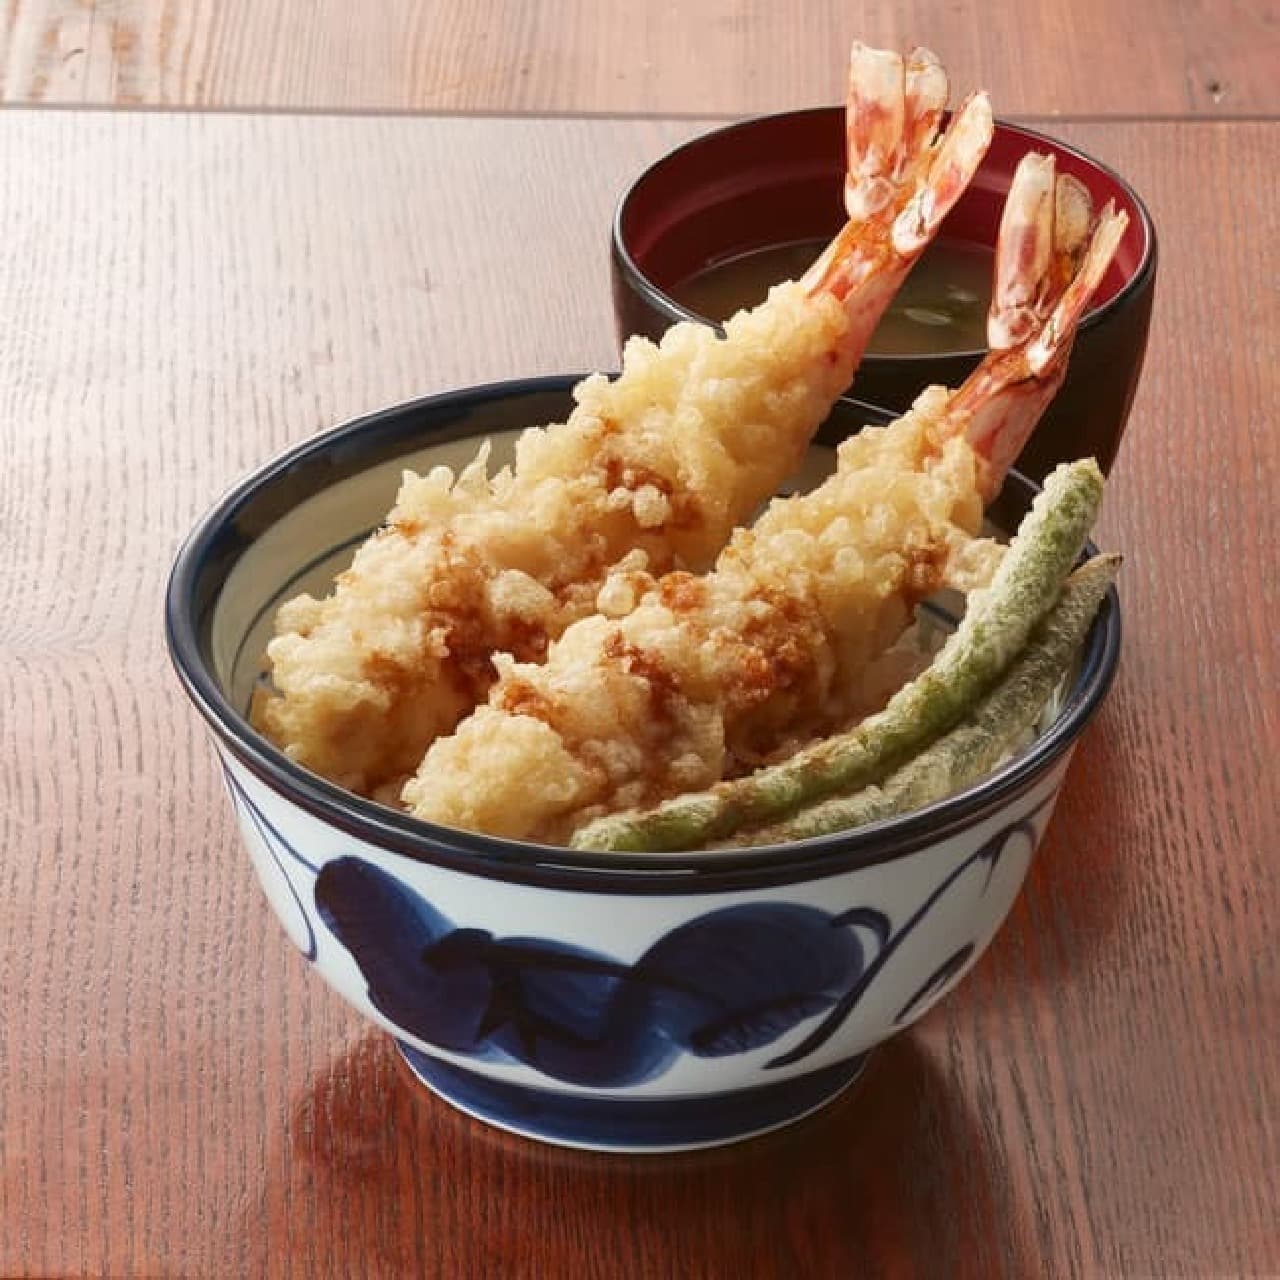 Tendon Tendon and "Shrimp Shrimp Medetai Tendon"